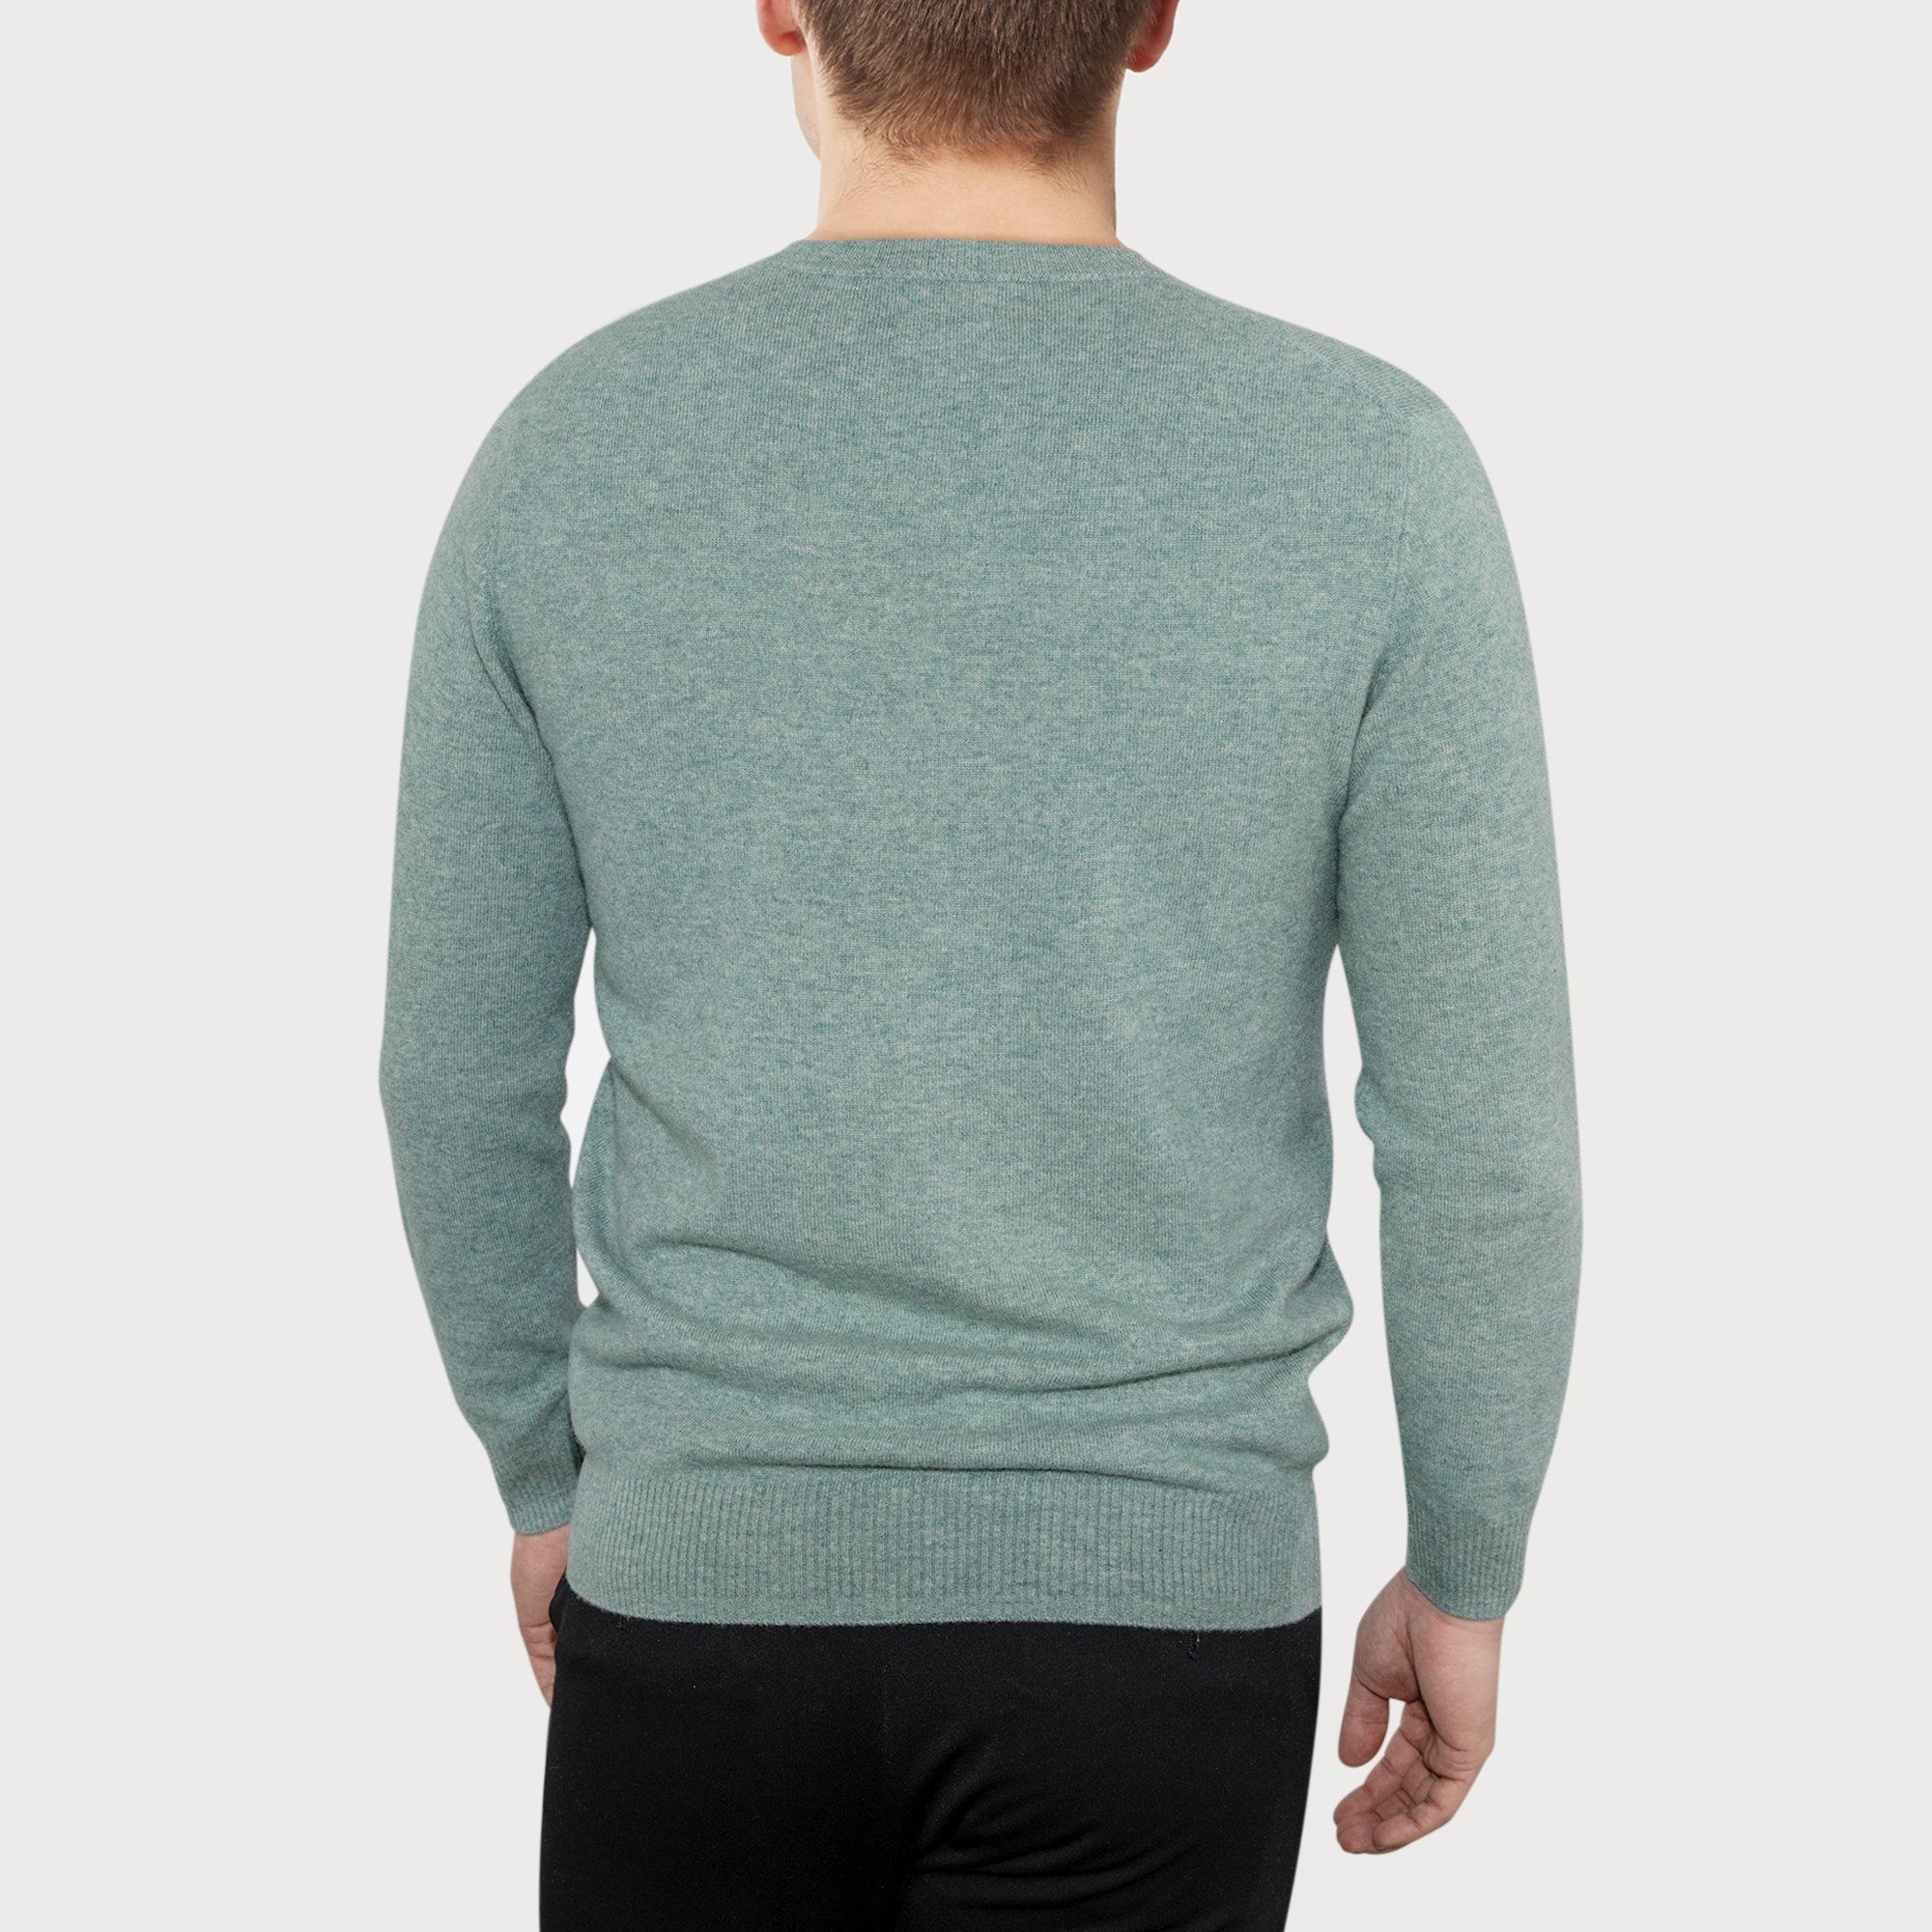 LEEZ Men V-neck Cashmere Sweater Green